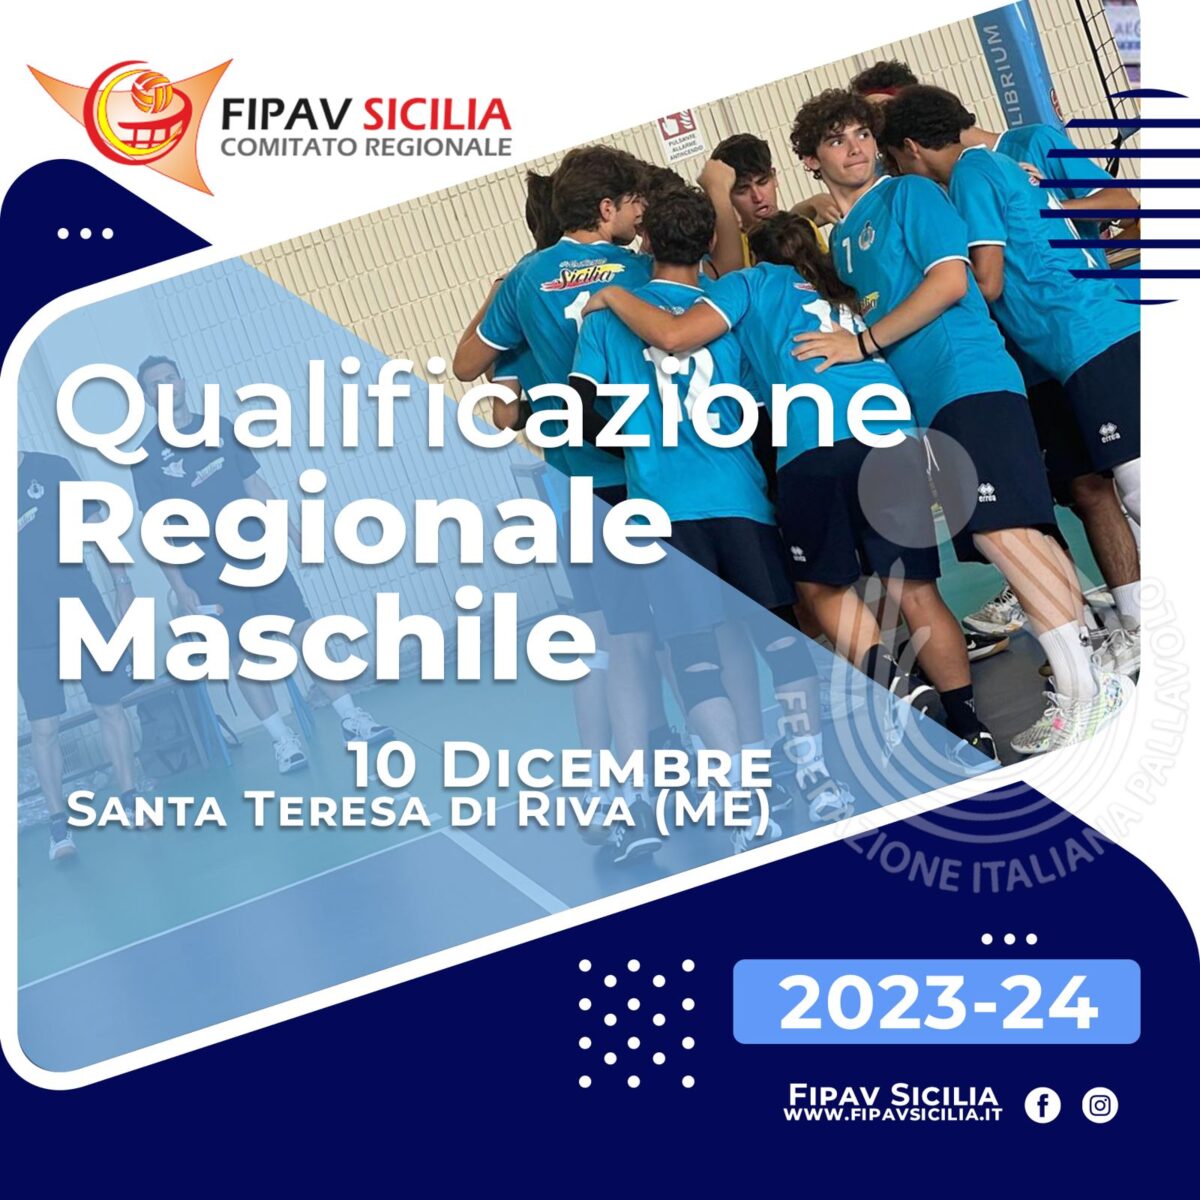 Continua la Qualificazione e Selezione nel Settore Maschile: Prossimo appuntamento a Messina il 10 Dicembre